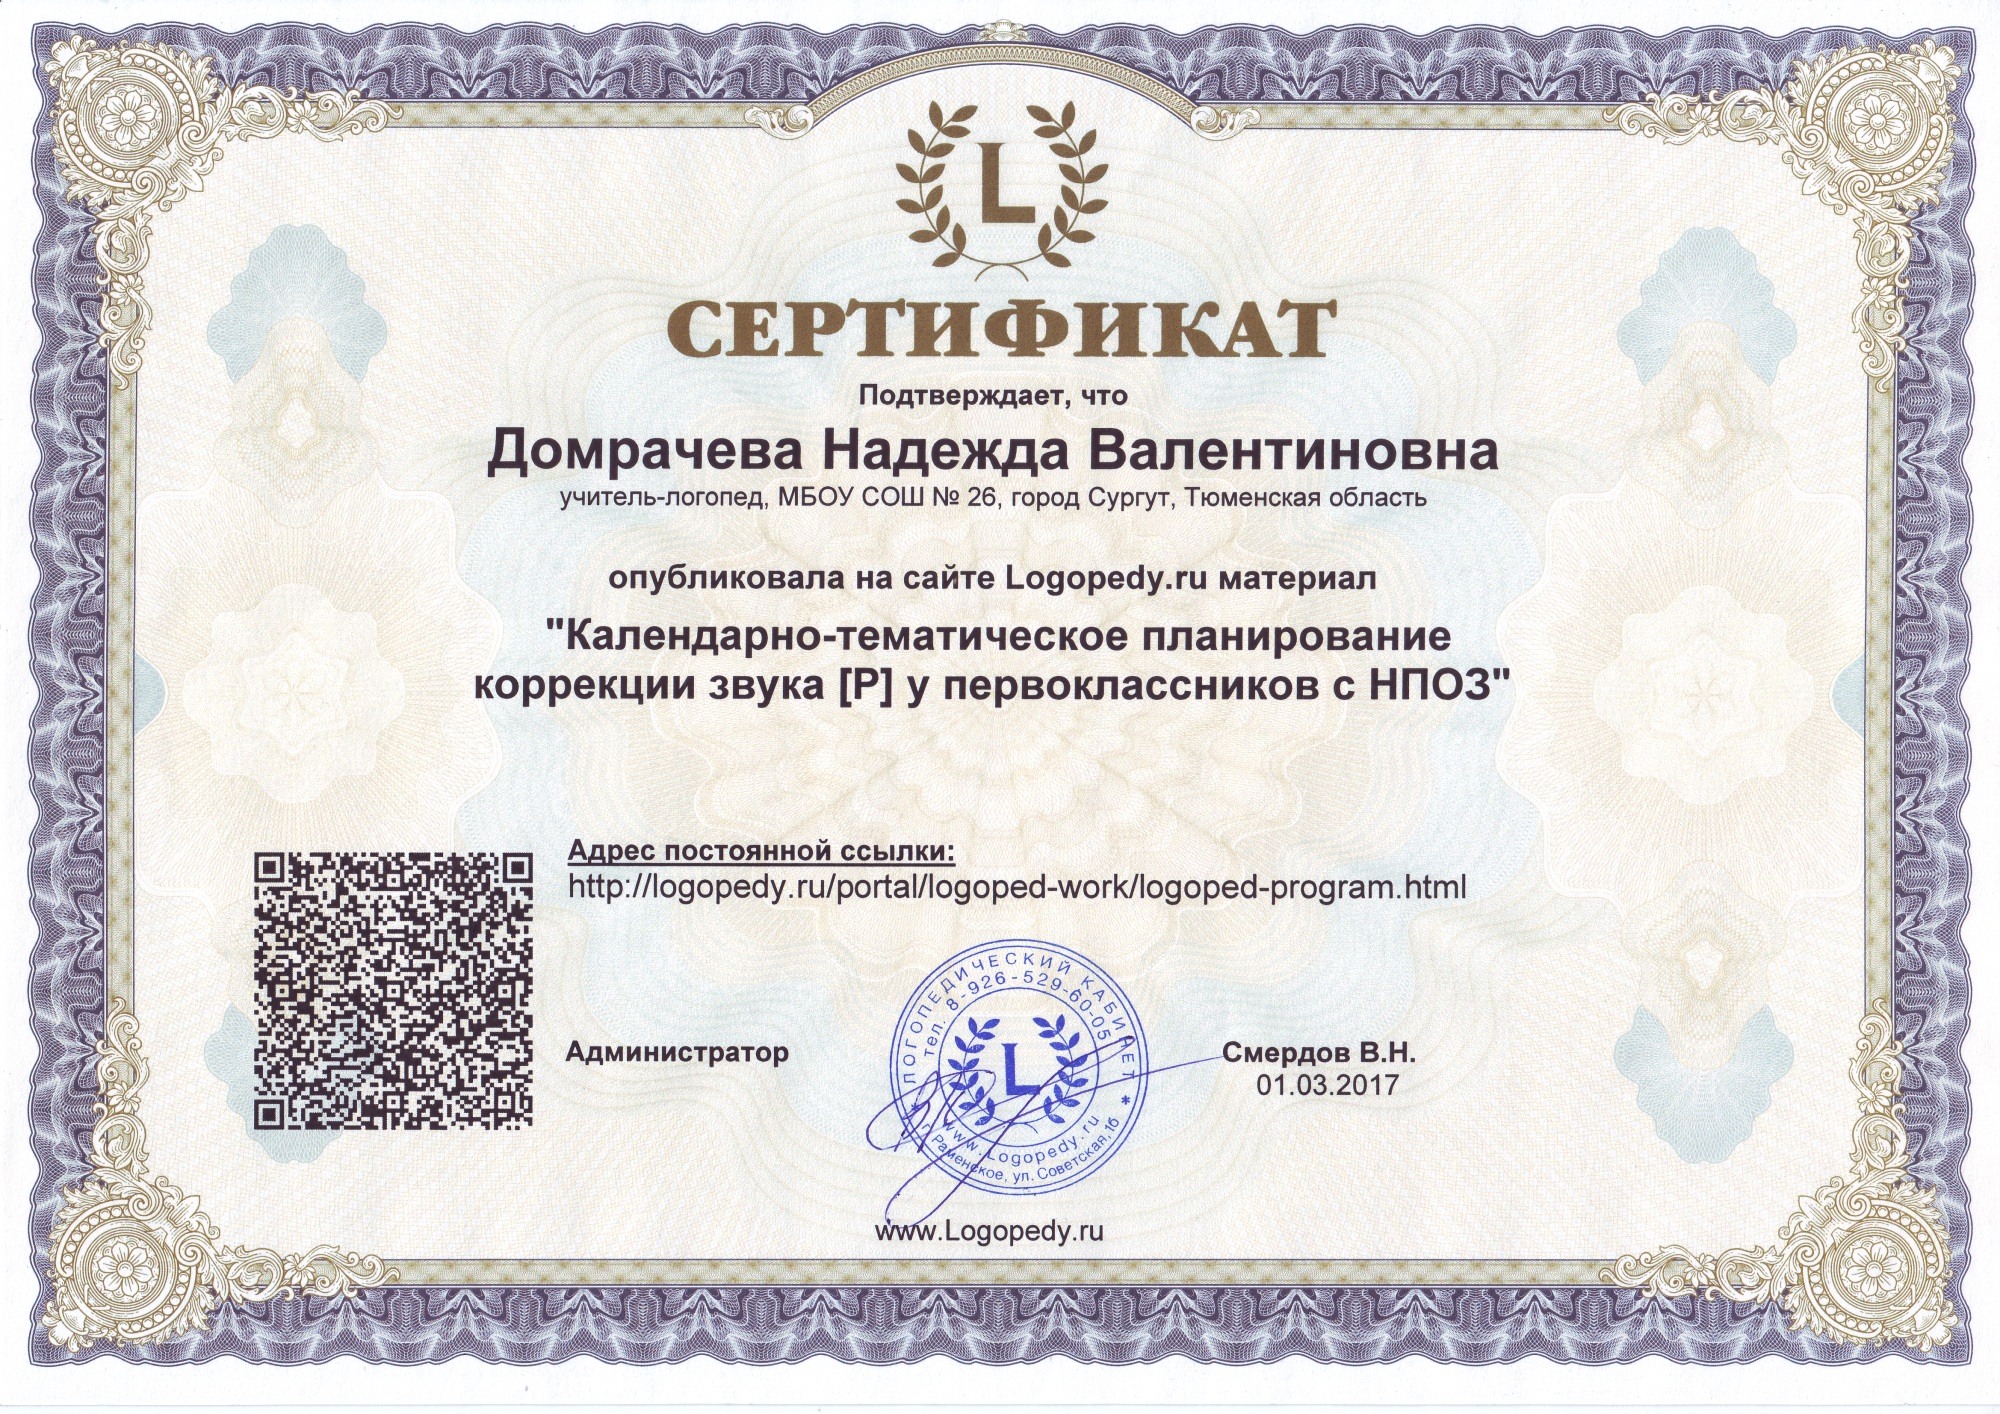 Сертификат Домрачевой Надежды Валентиновны